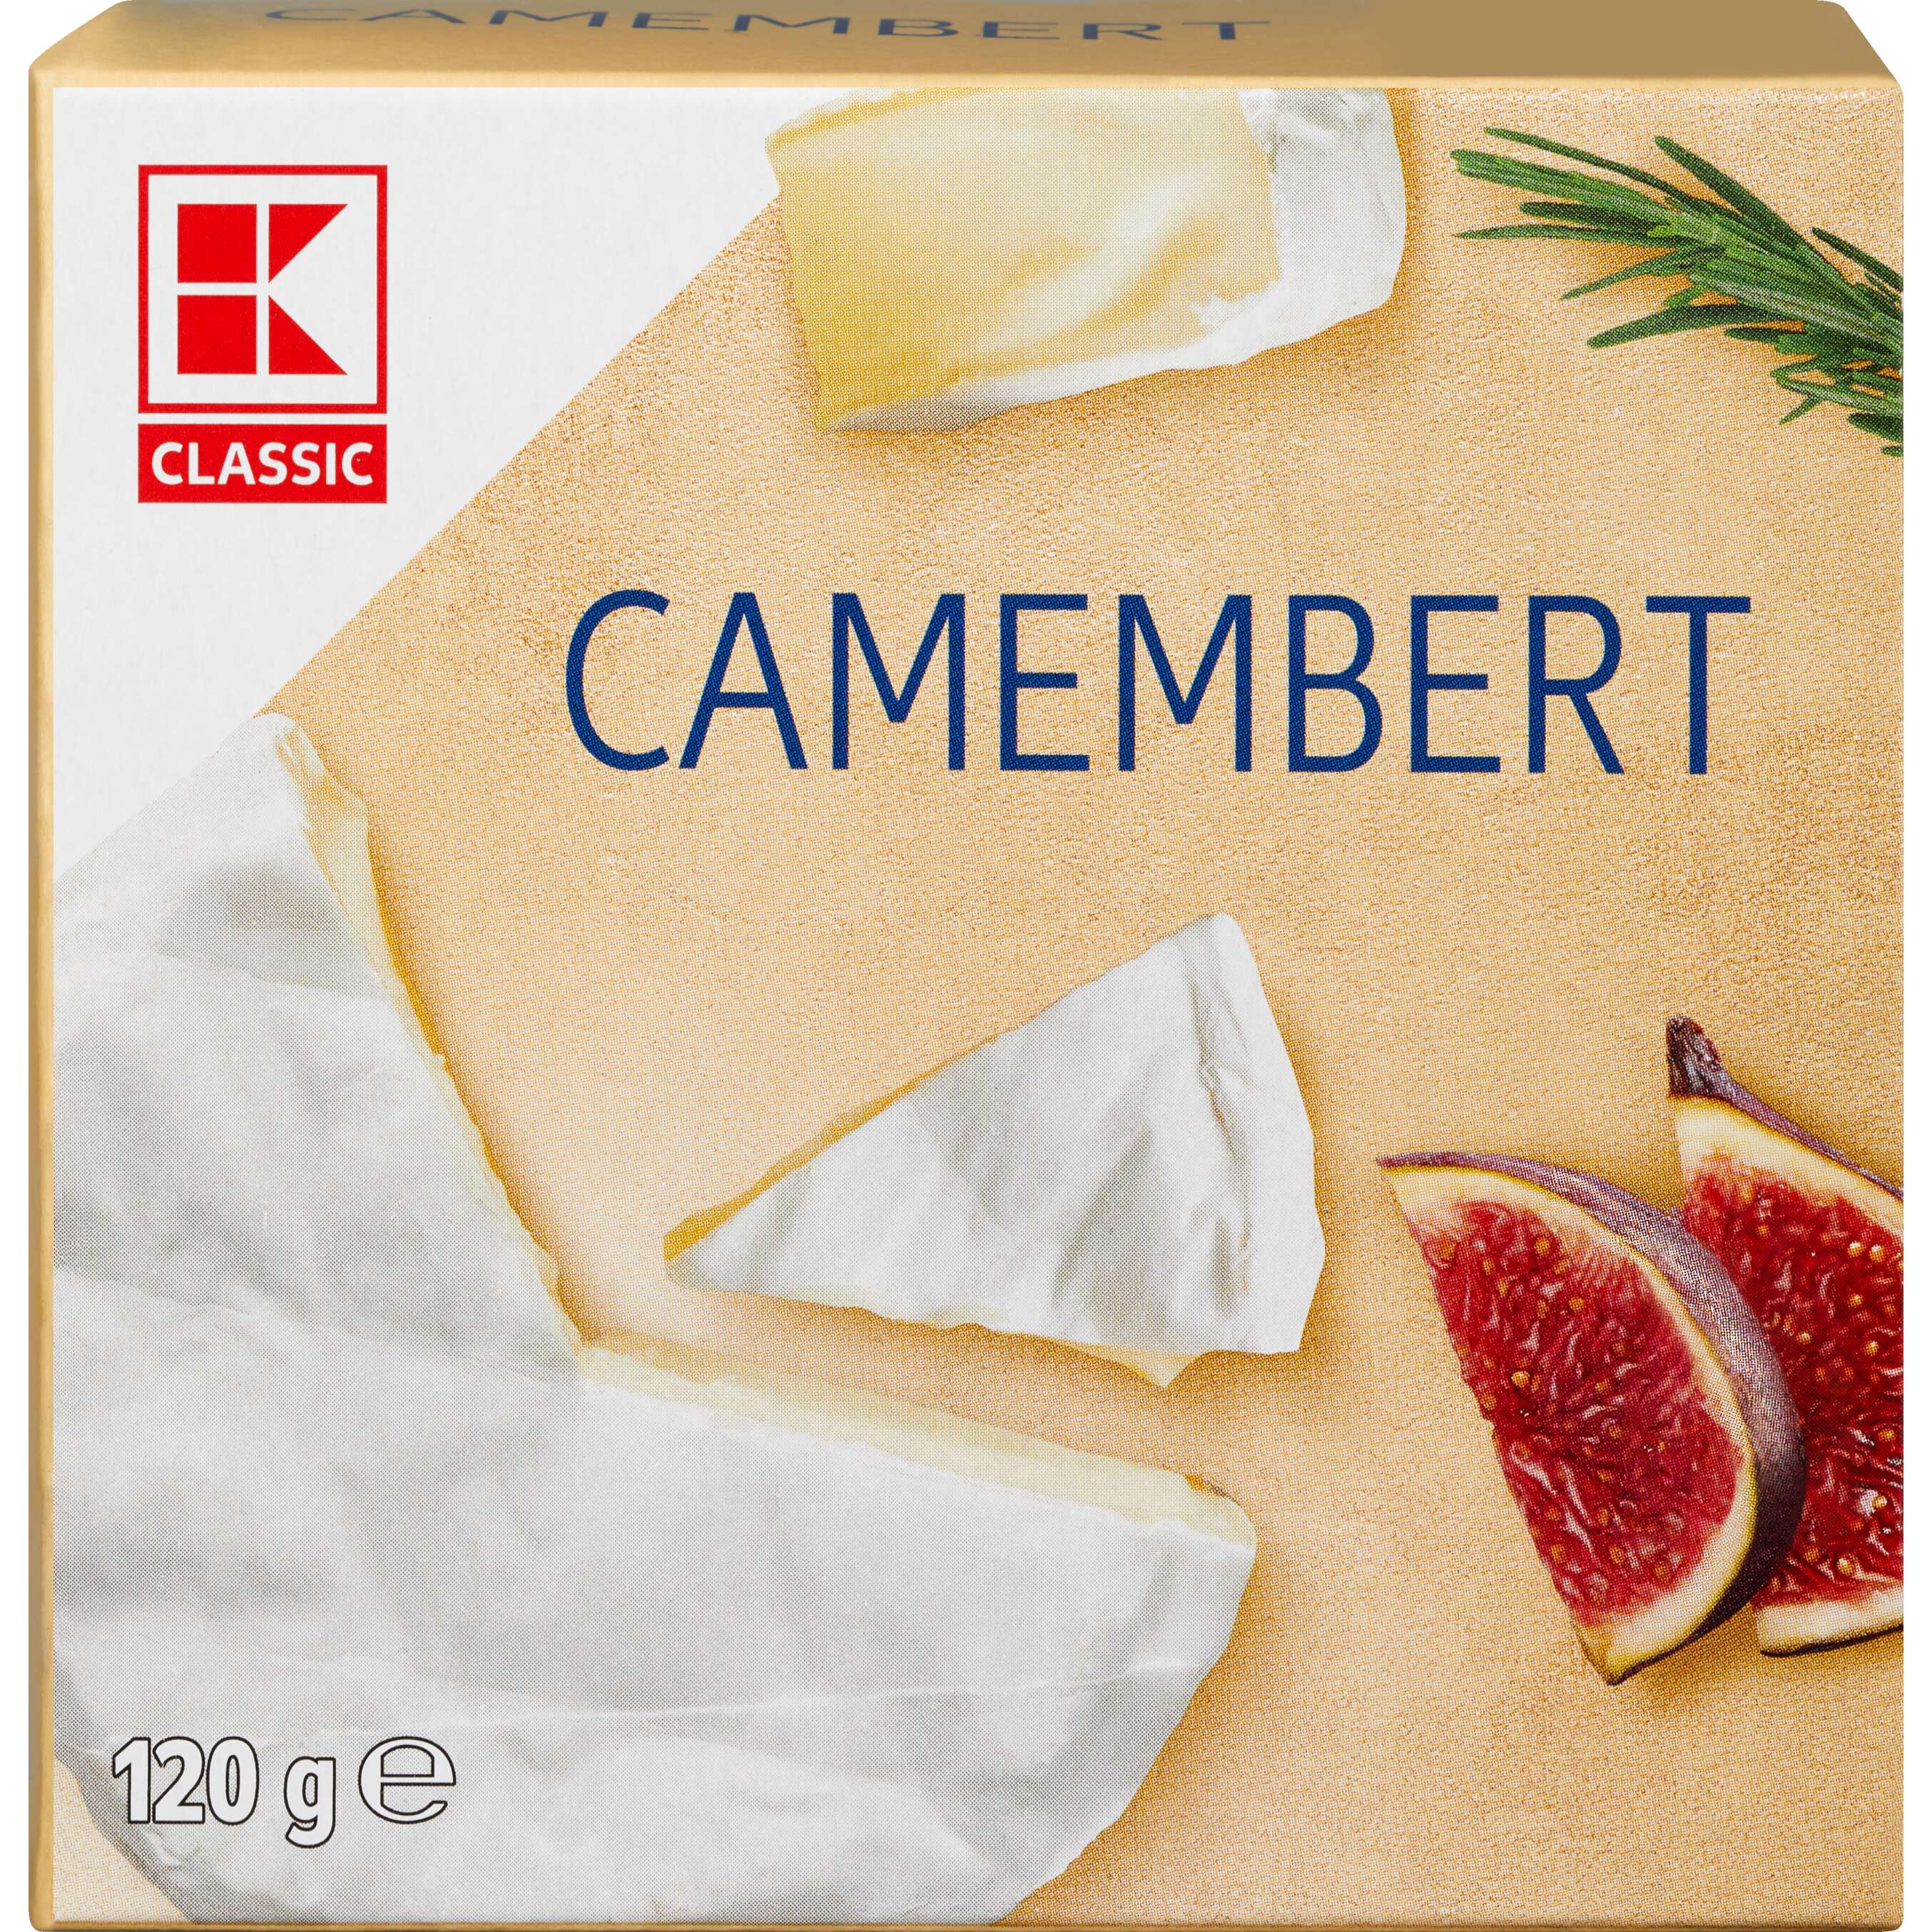 Zobrazit nabídku K-Classic Camembert zrající sýr s bílou plísní